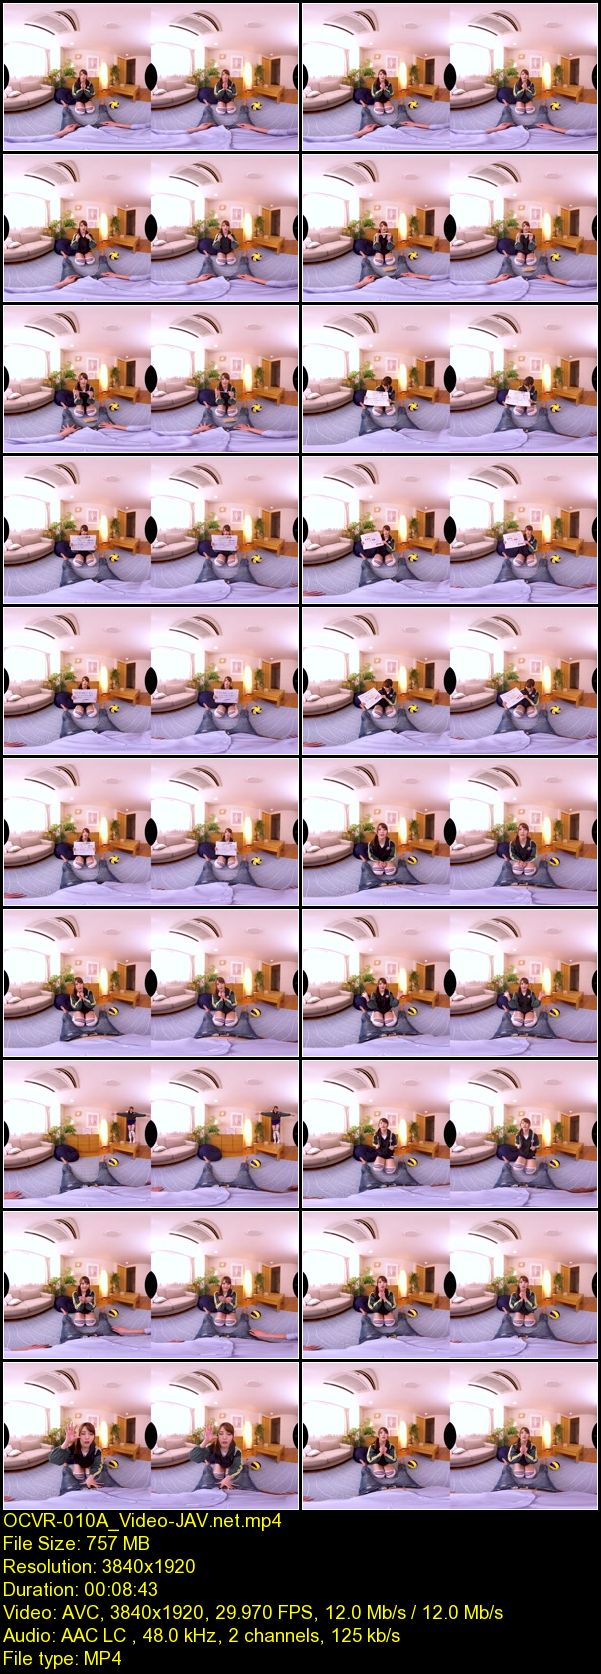 Download Japanese Adult Video Riona Mana [OCVR 010] 【VR AV】3DVR 夢の妊娠発情スイッチを入れる伝説のろうそくを手に入れた僕…高嶺の花！バレー部キャプテンの幼馴染を強制発情させてまんぐり種づけSEX 真奈りおな 2019 08 01